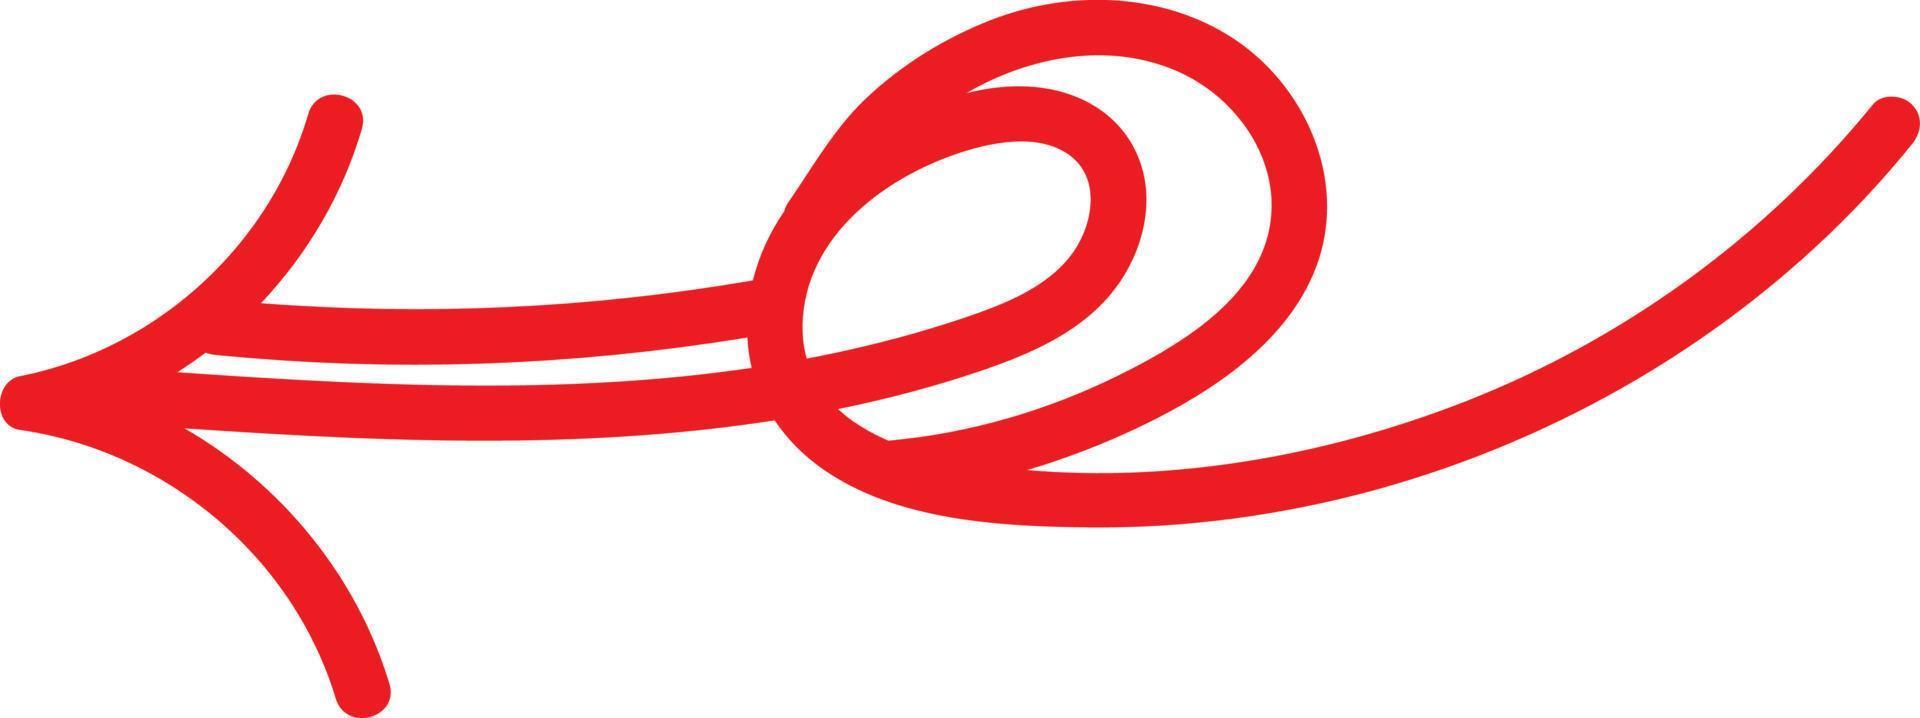 röd pil med ändrats riktning, illustration, vektor på vit bakgrund.